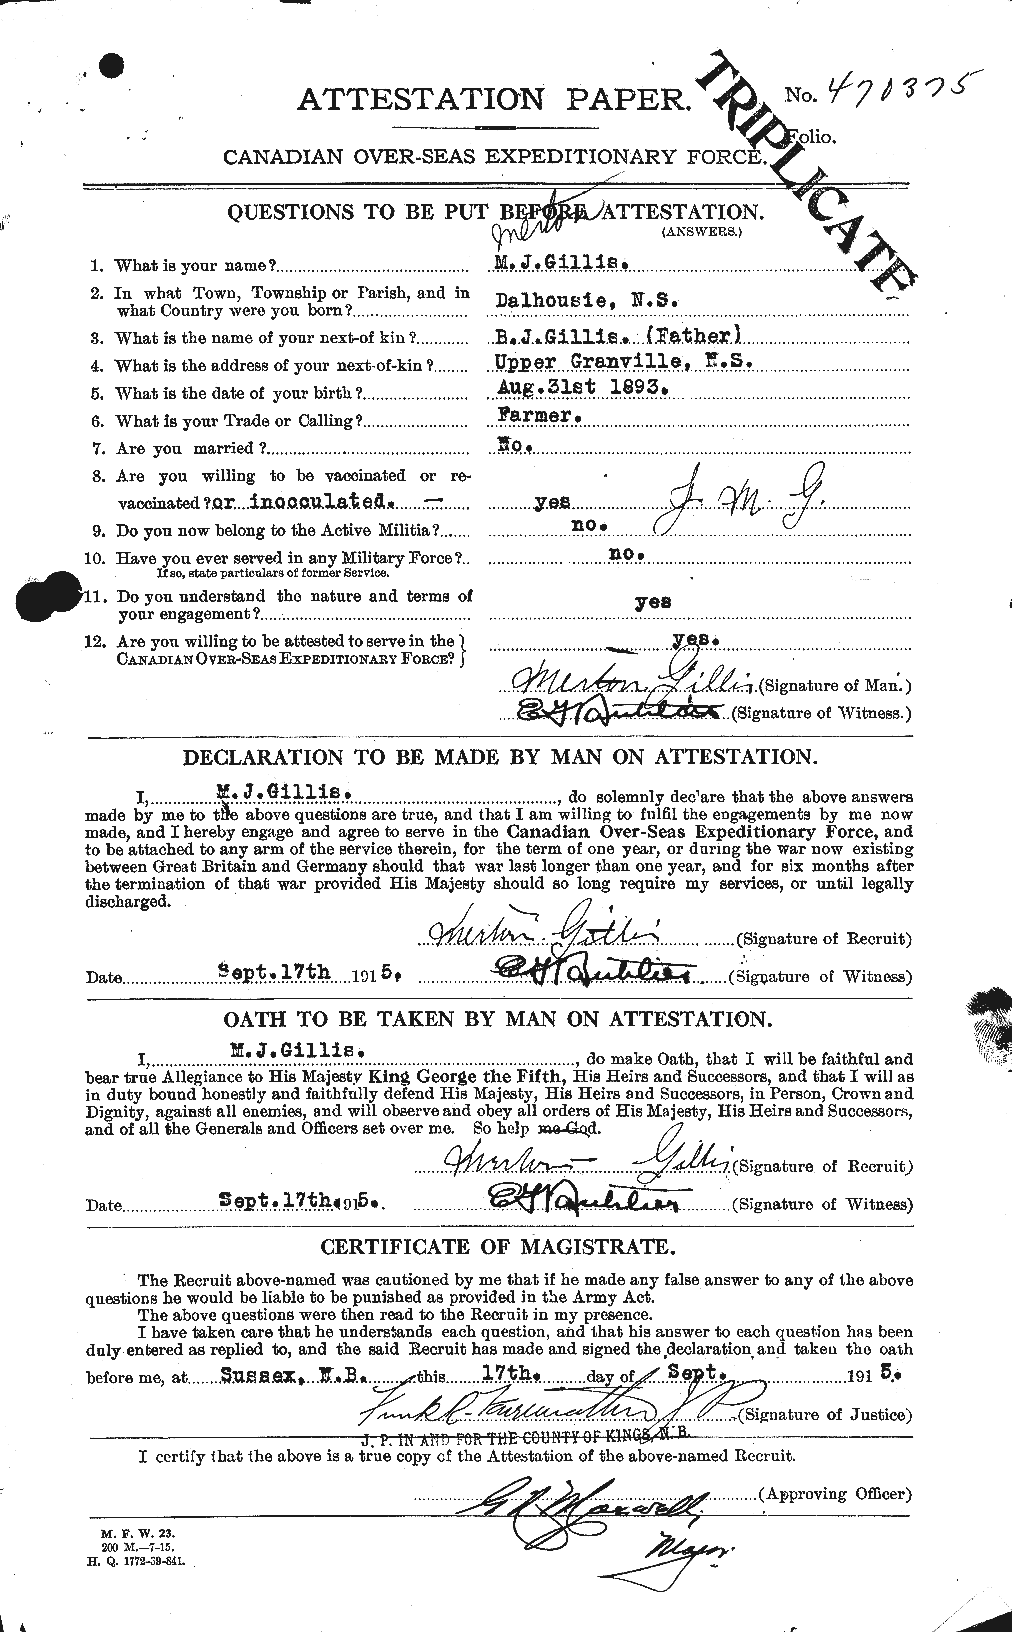 Dossiers du Personnel de la Première Guerre mondiale - CEC 348114a